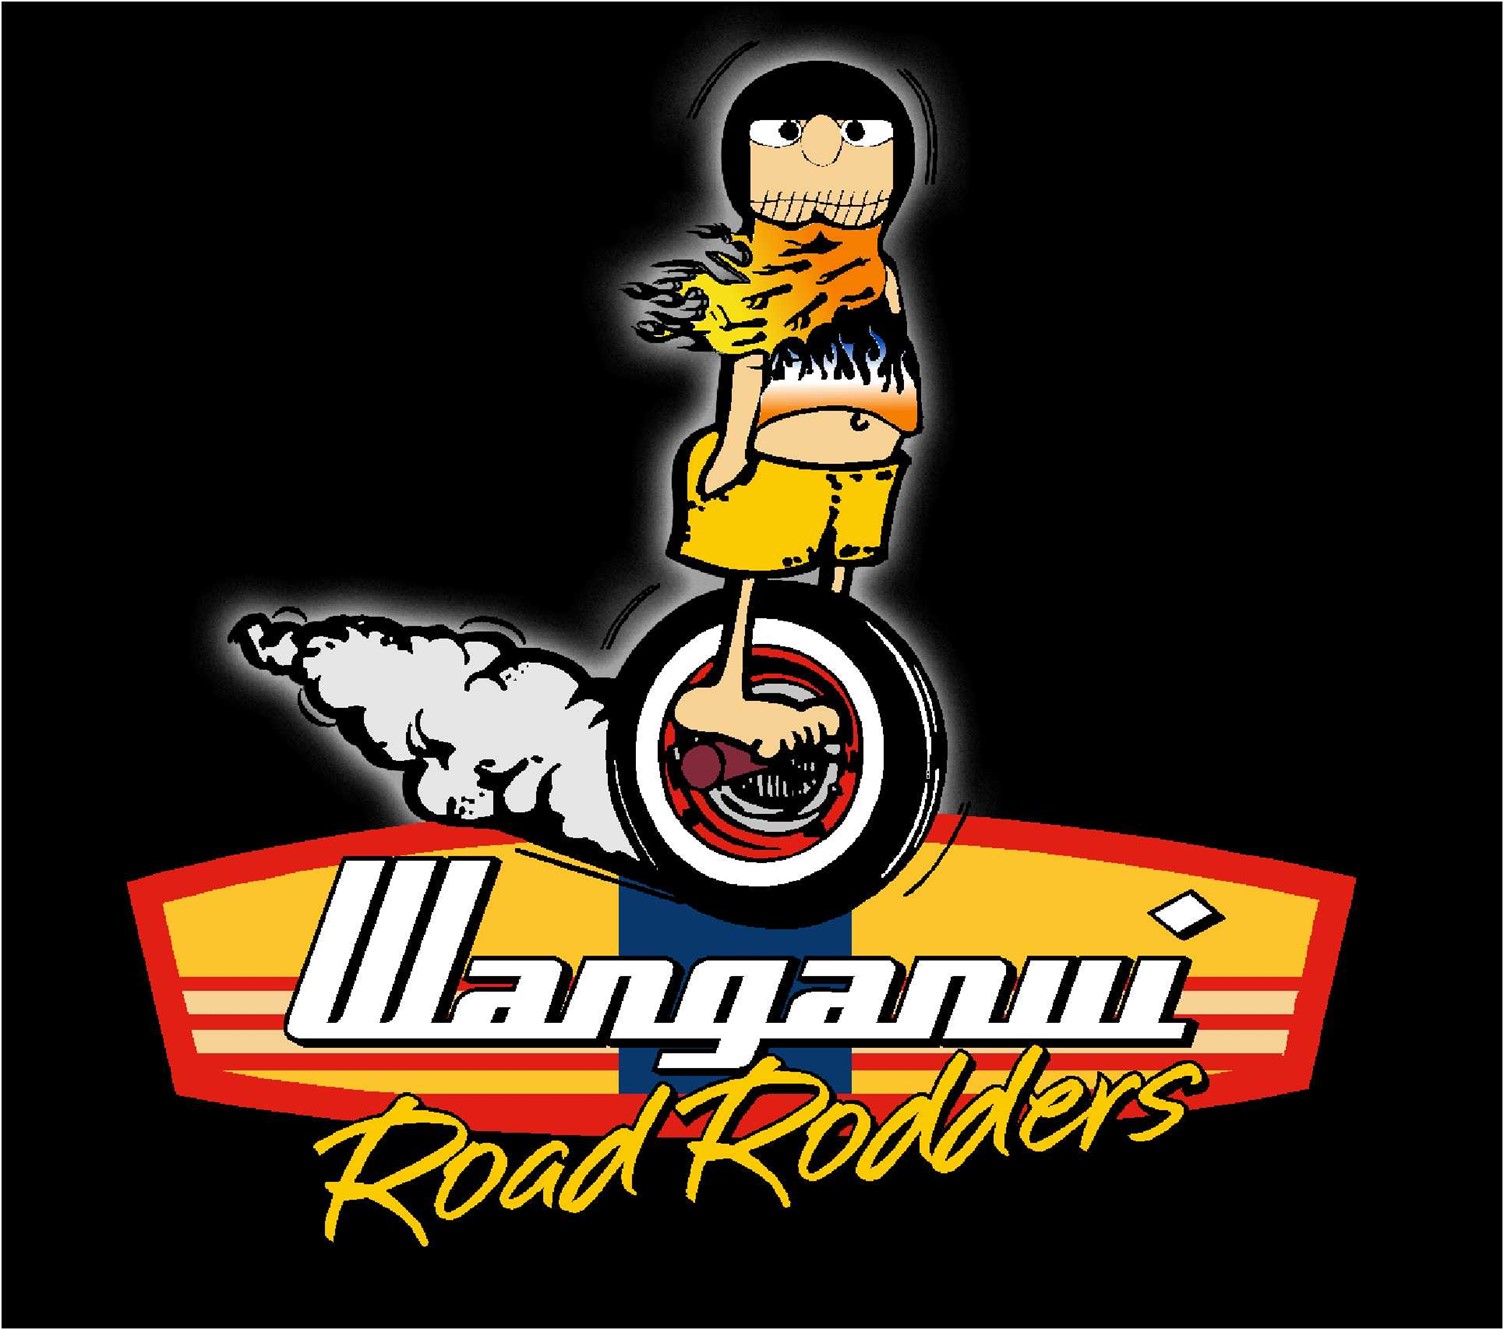 Wanganui Road Rodders - Ian Hooper Memorial Run 